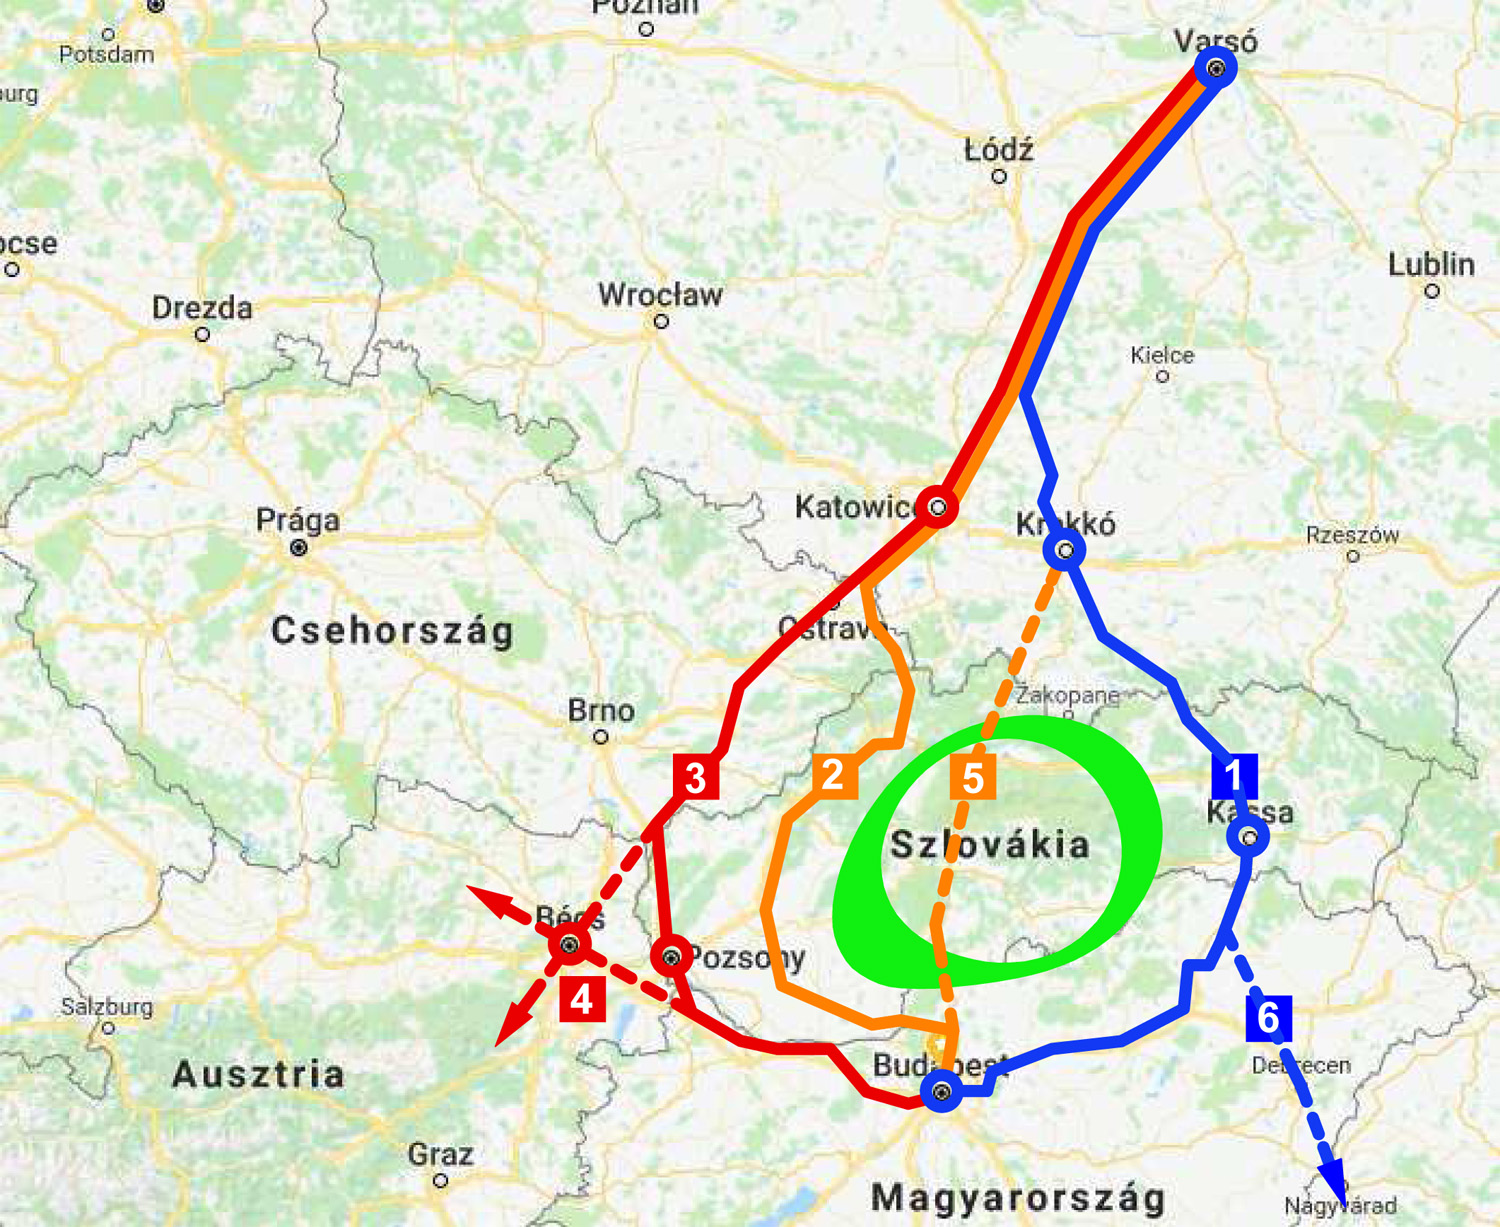 Magyar konzorcium tervezheti a Budapest–Pozsony–Brno–Varsó nagysebességű vasútvonalat. A grafikán 3-as számmal jelölt útvonal áll a legközelebb a végsőhöz, viszont az érinti Brno városát is